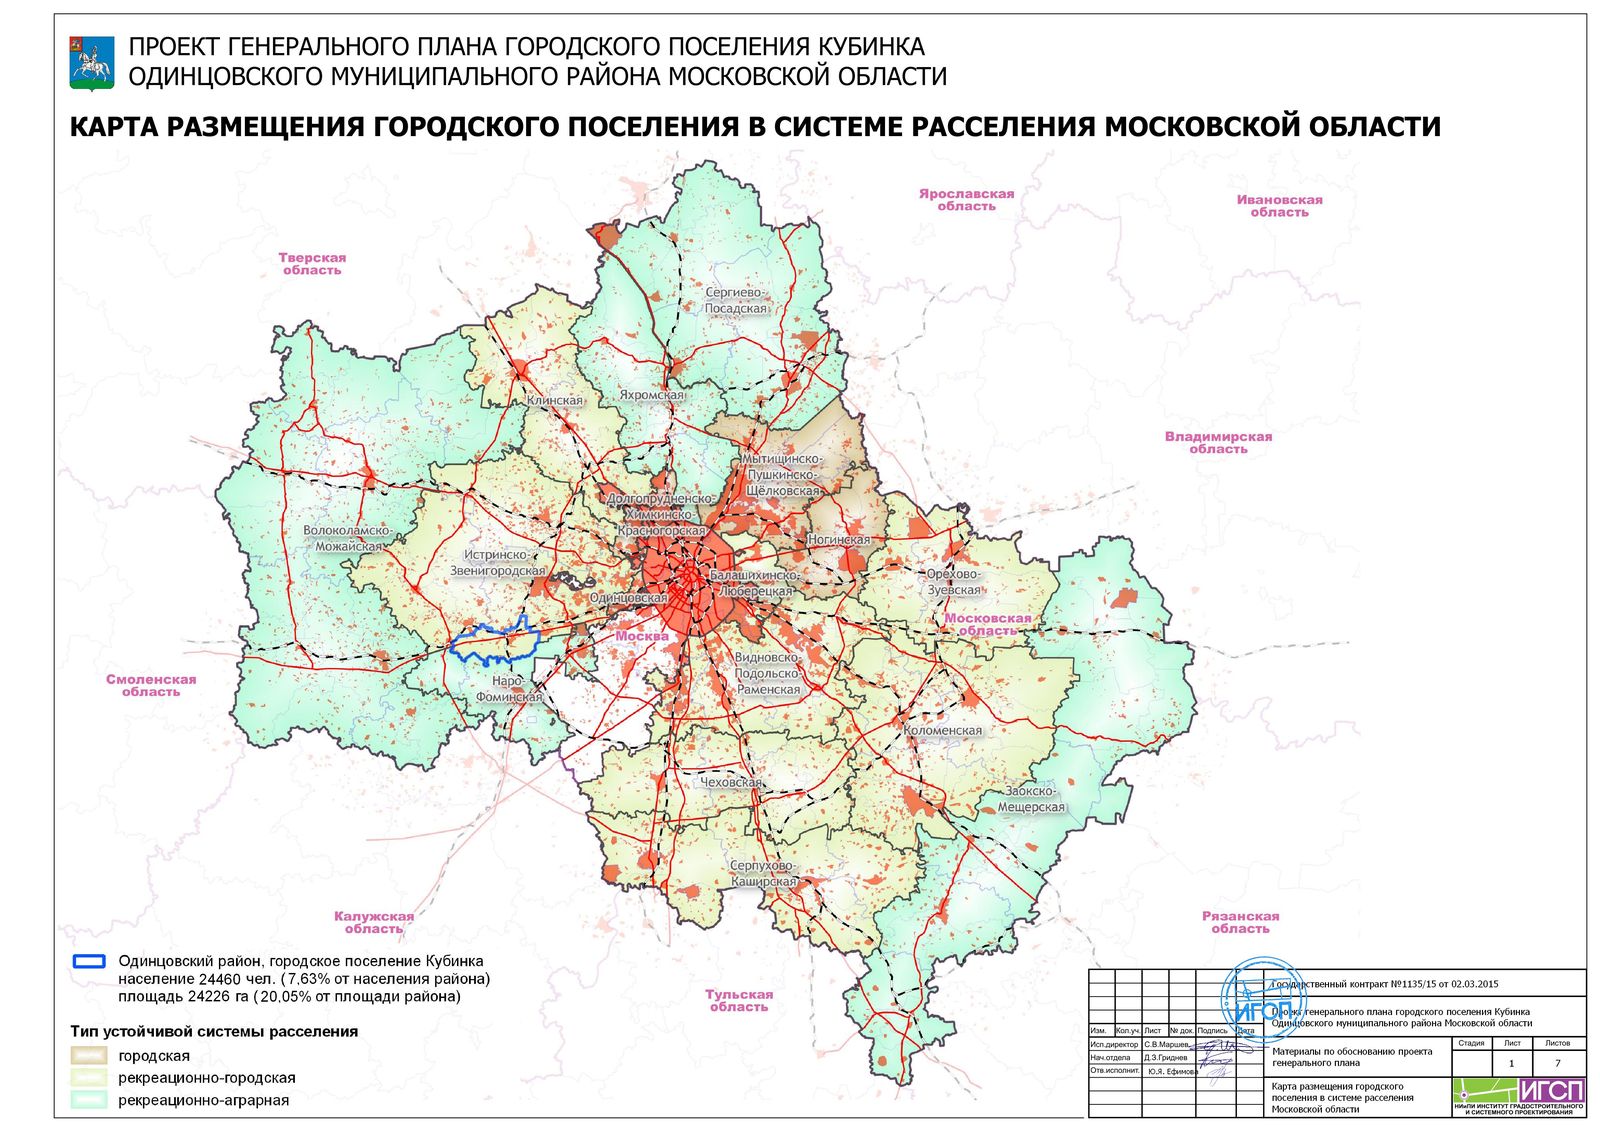 Устойчивые системы расселения Московской области